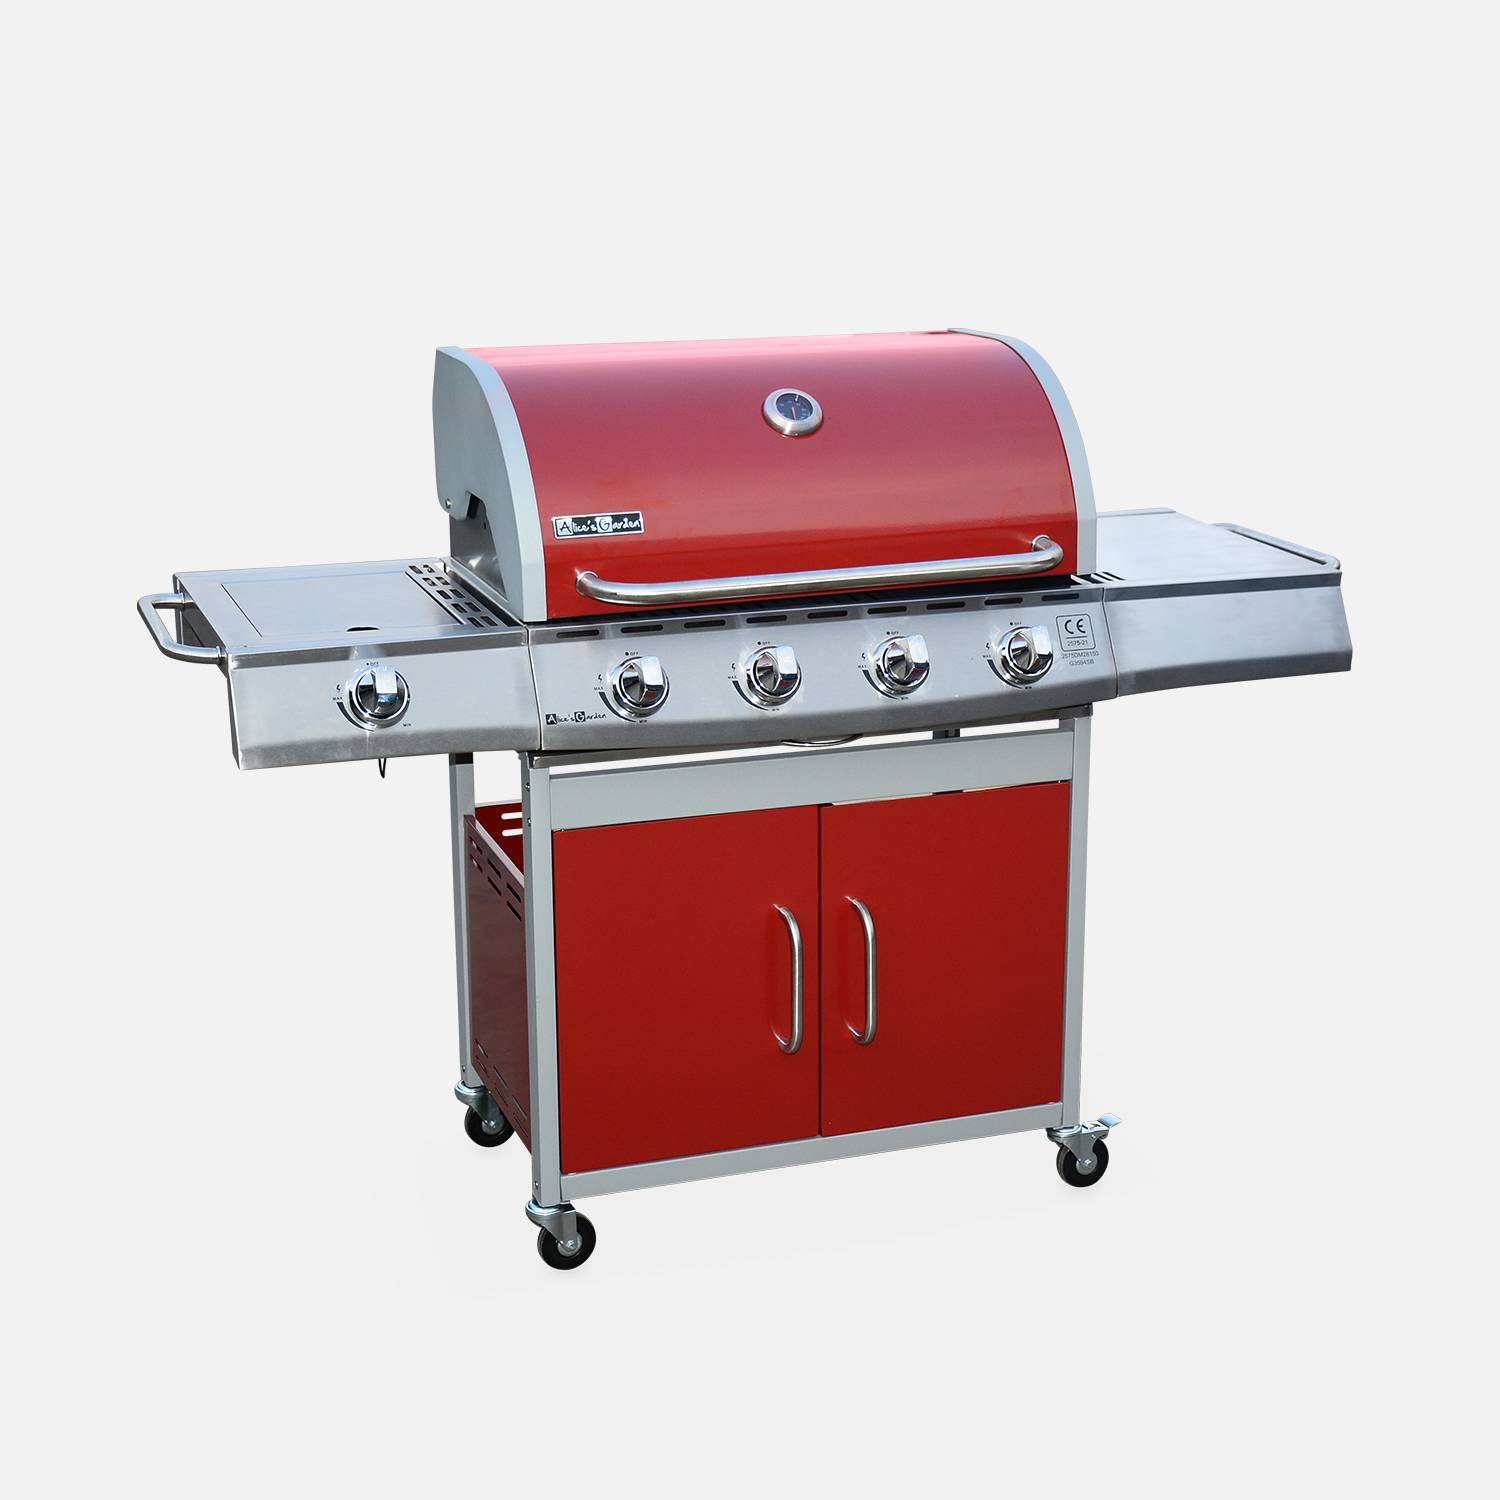 Barbecue gaz inox 17kW - Richelieu Rouge - Barbecue 5 brûleurs dont 1 feu latéral, côté grill et côté plancha Photo3